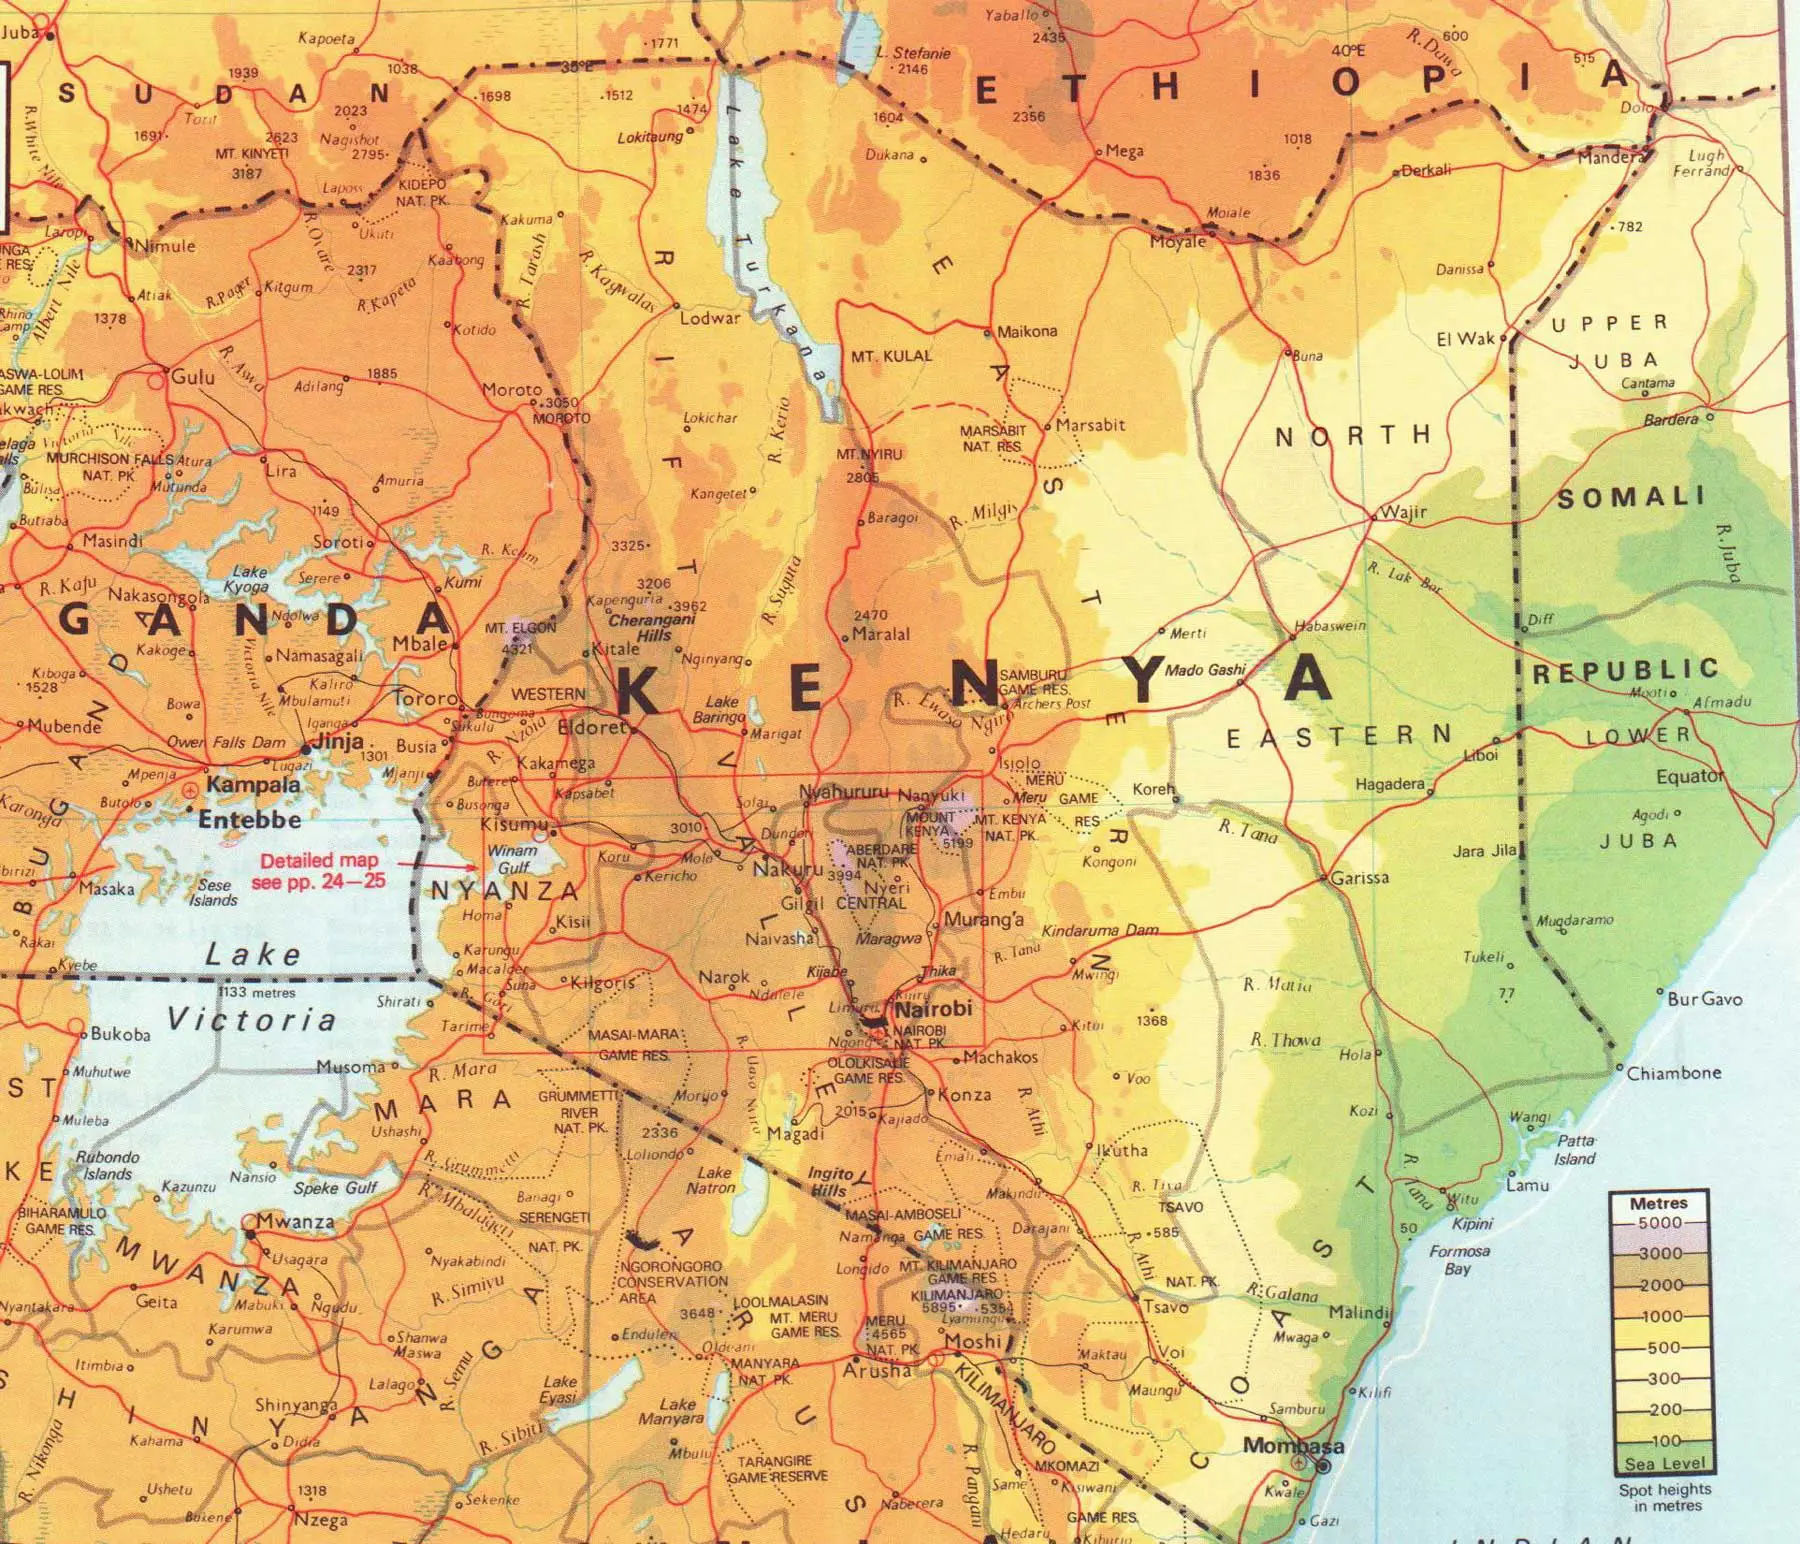 Kenya Map 1 - MapSof.net